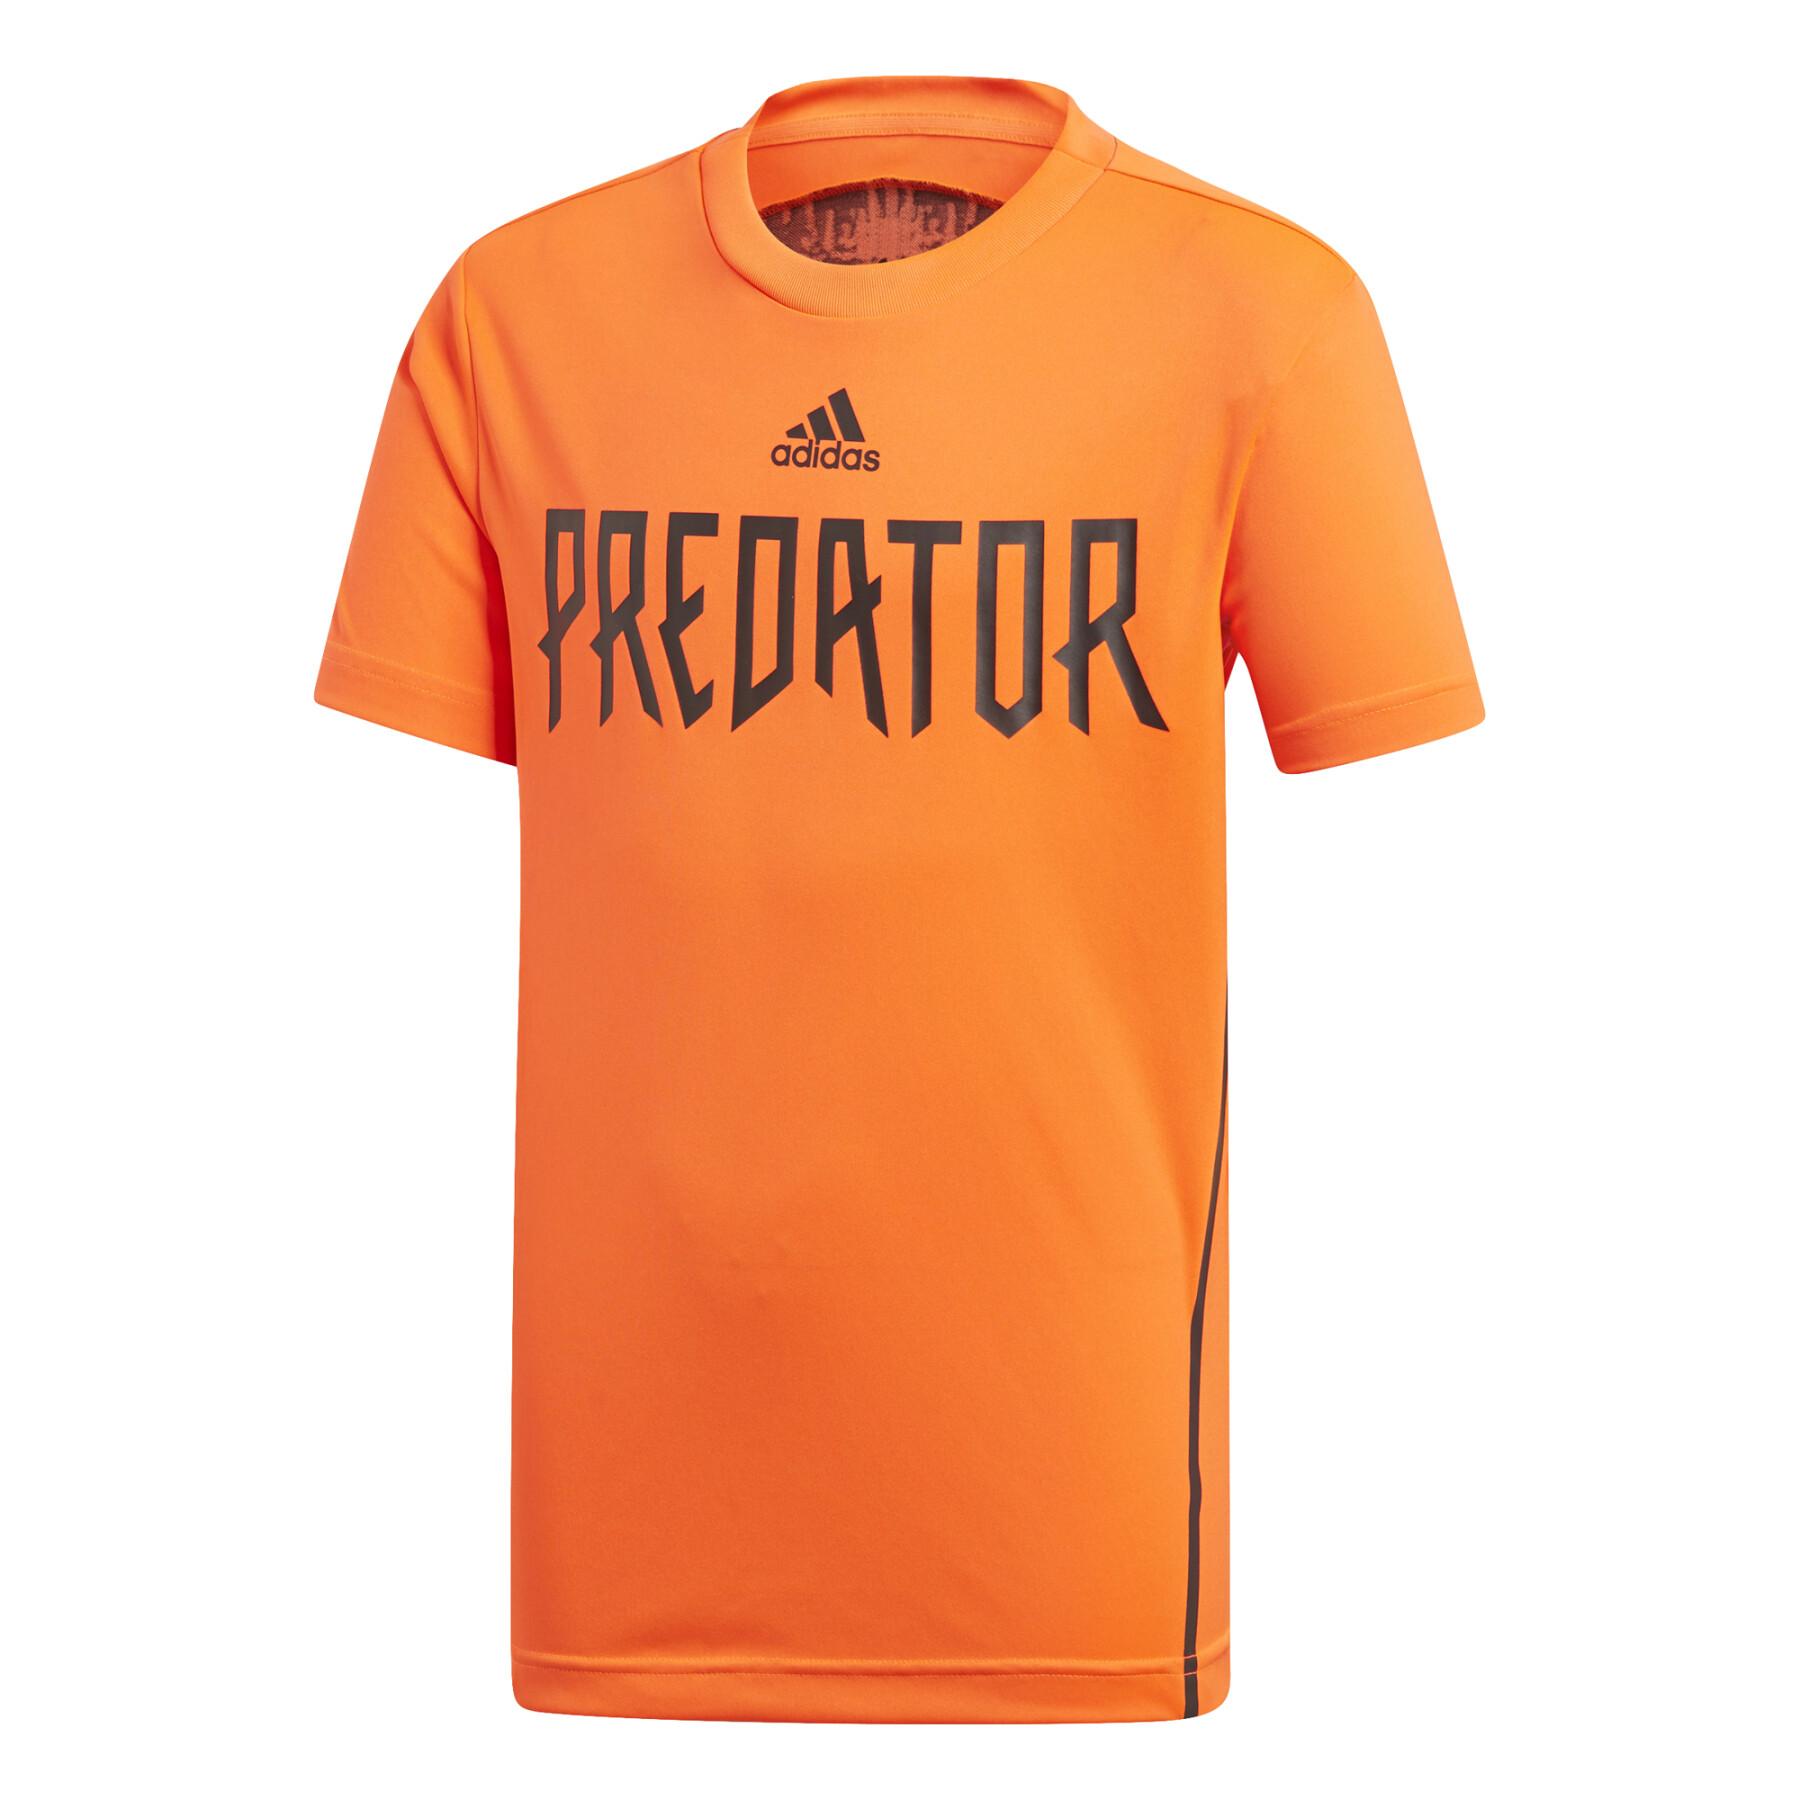 Children's jersey adidas Predator